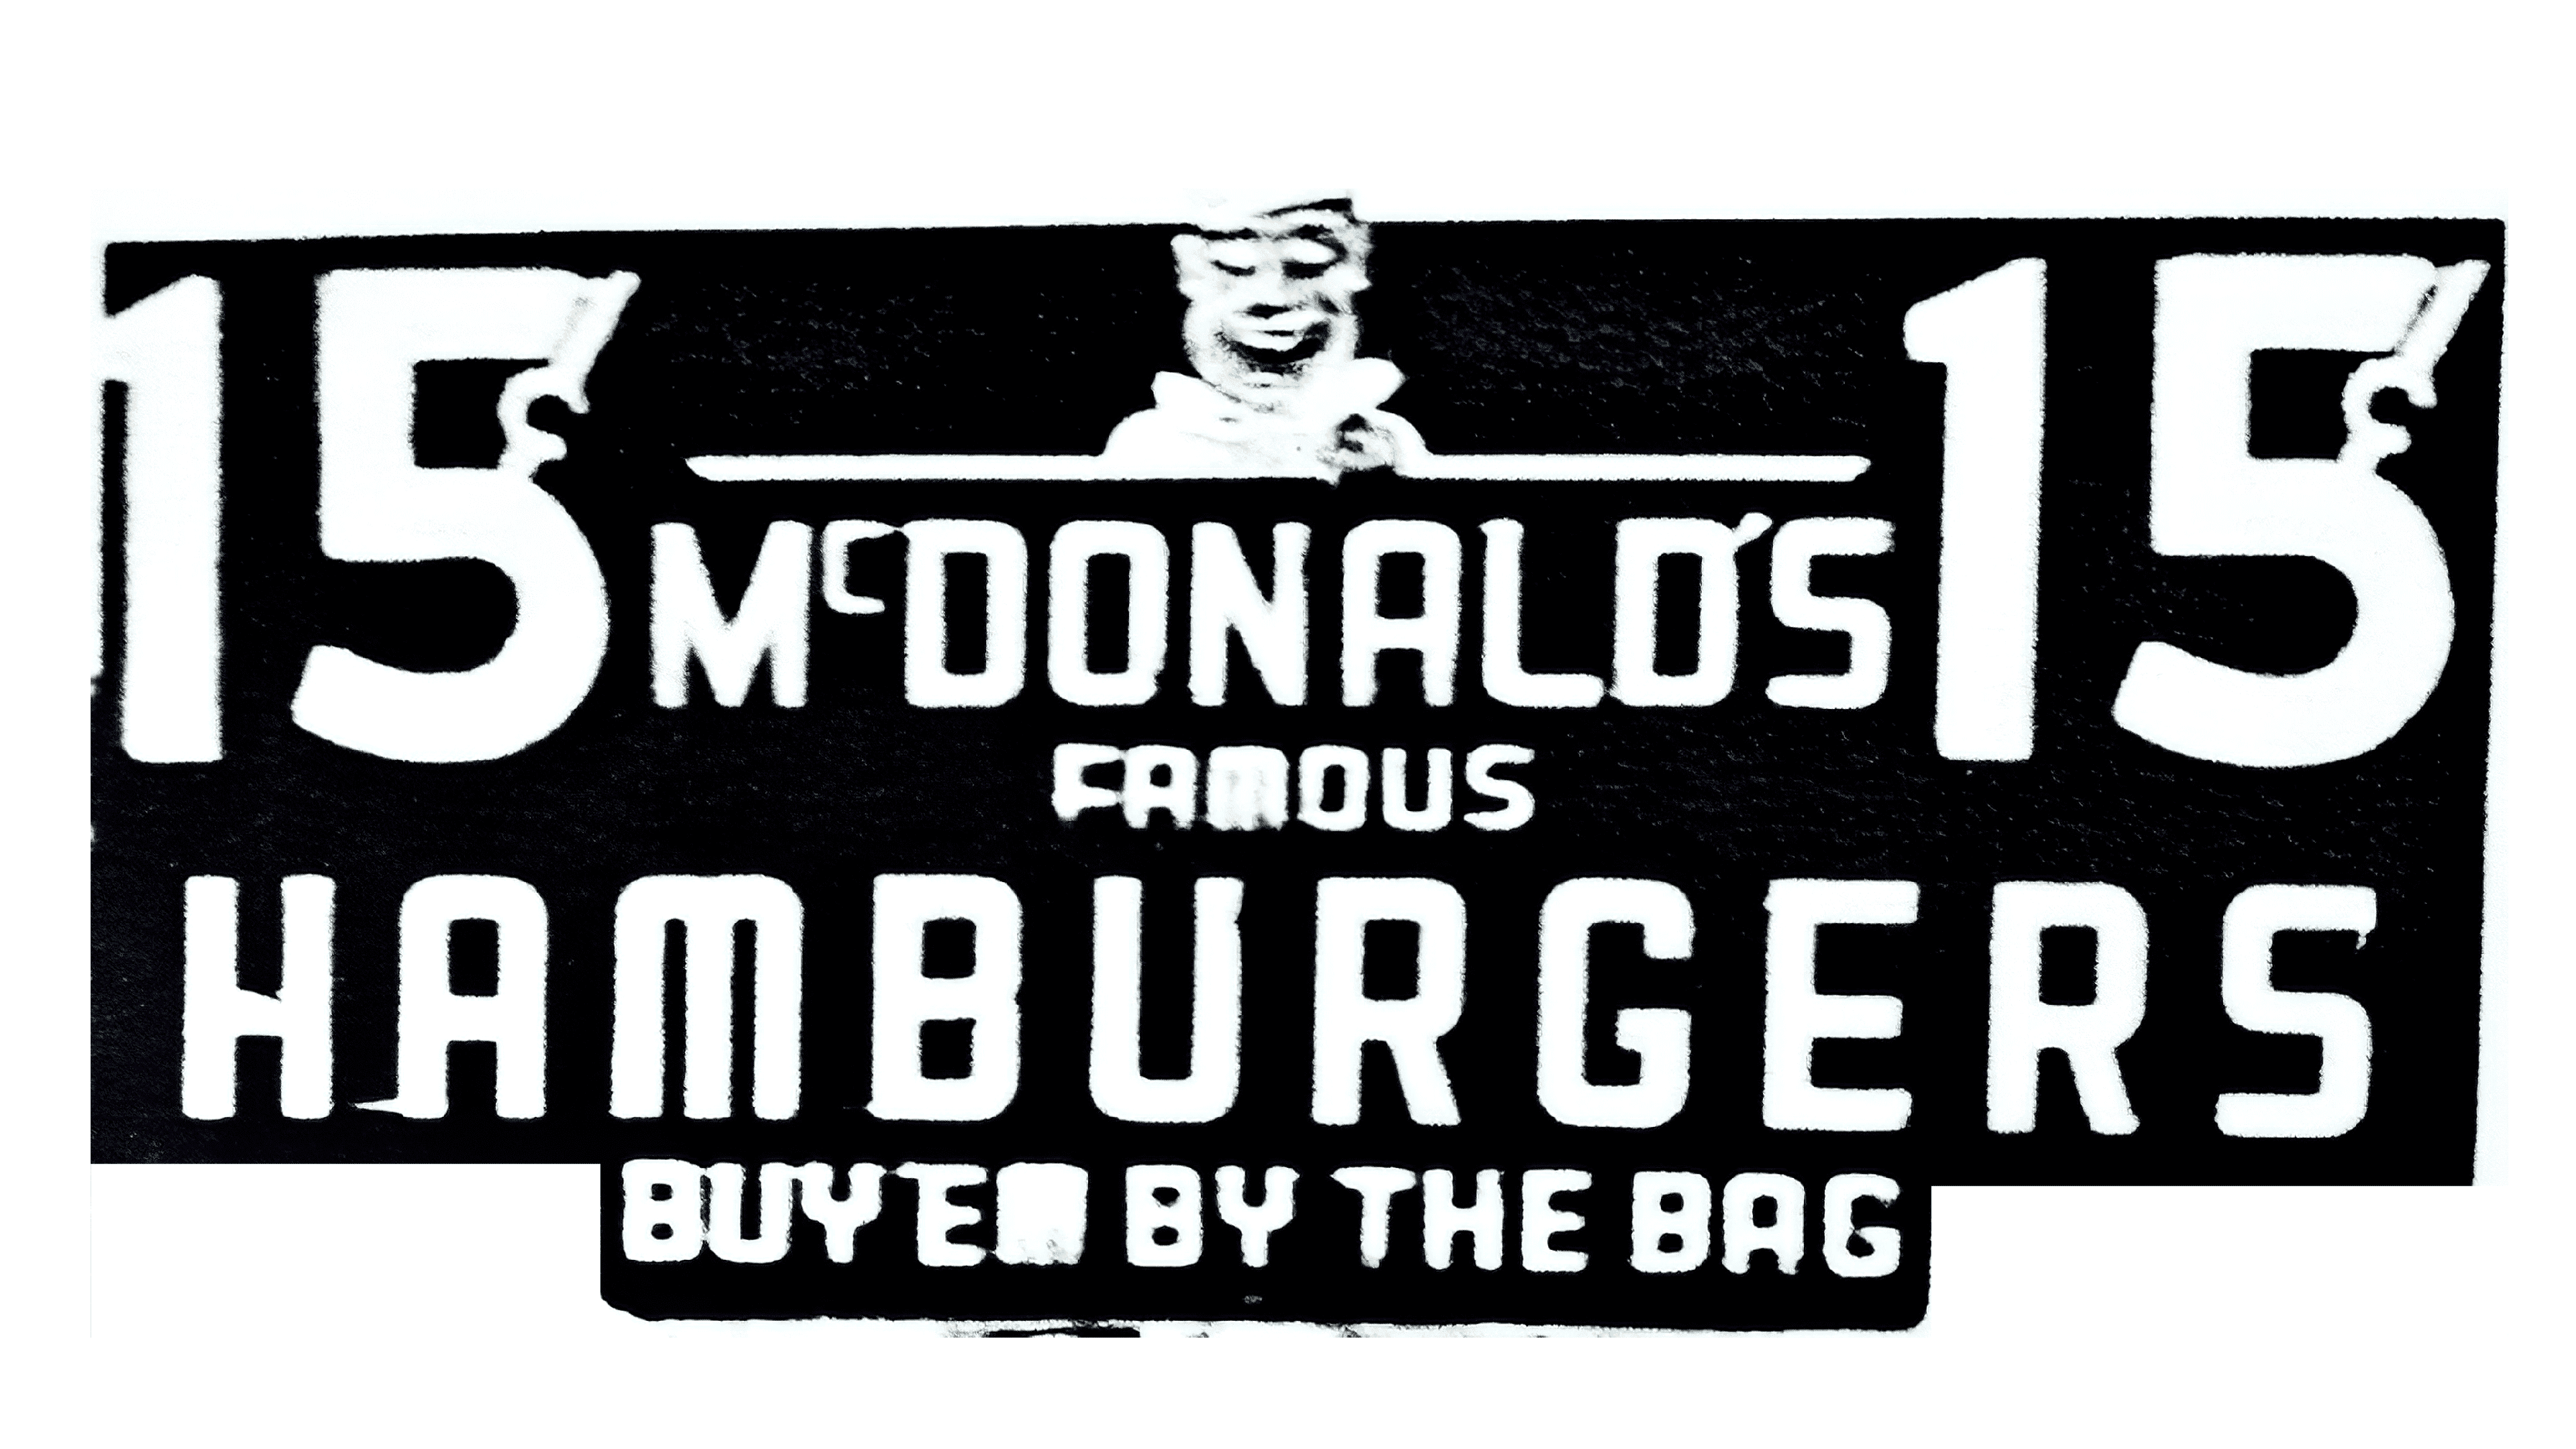 Mc Donald's logo 1948